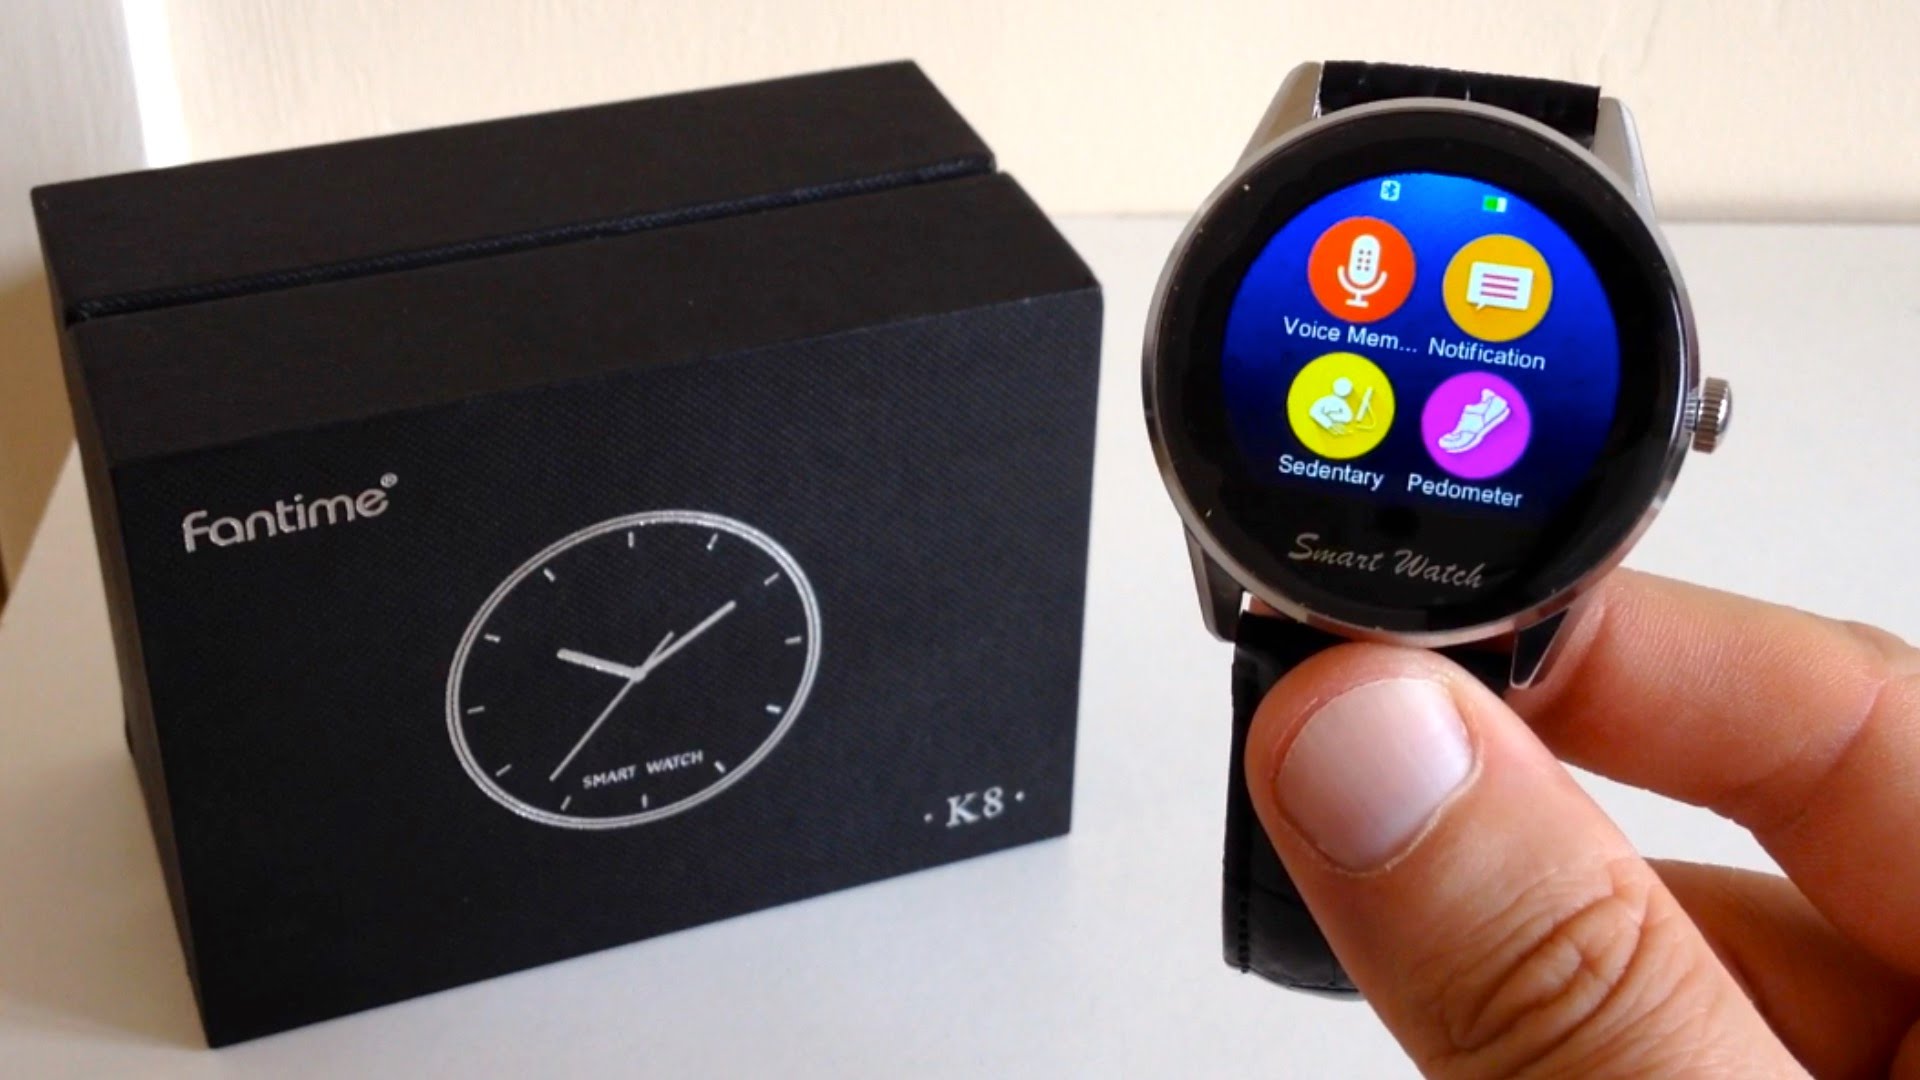 Fantime Smartwatch K8-S, uno de los relojes inteligentes más baratos del mercado